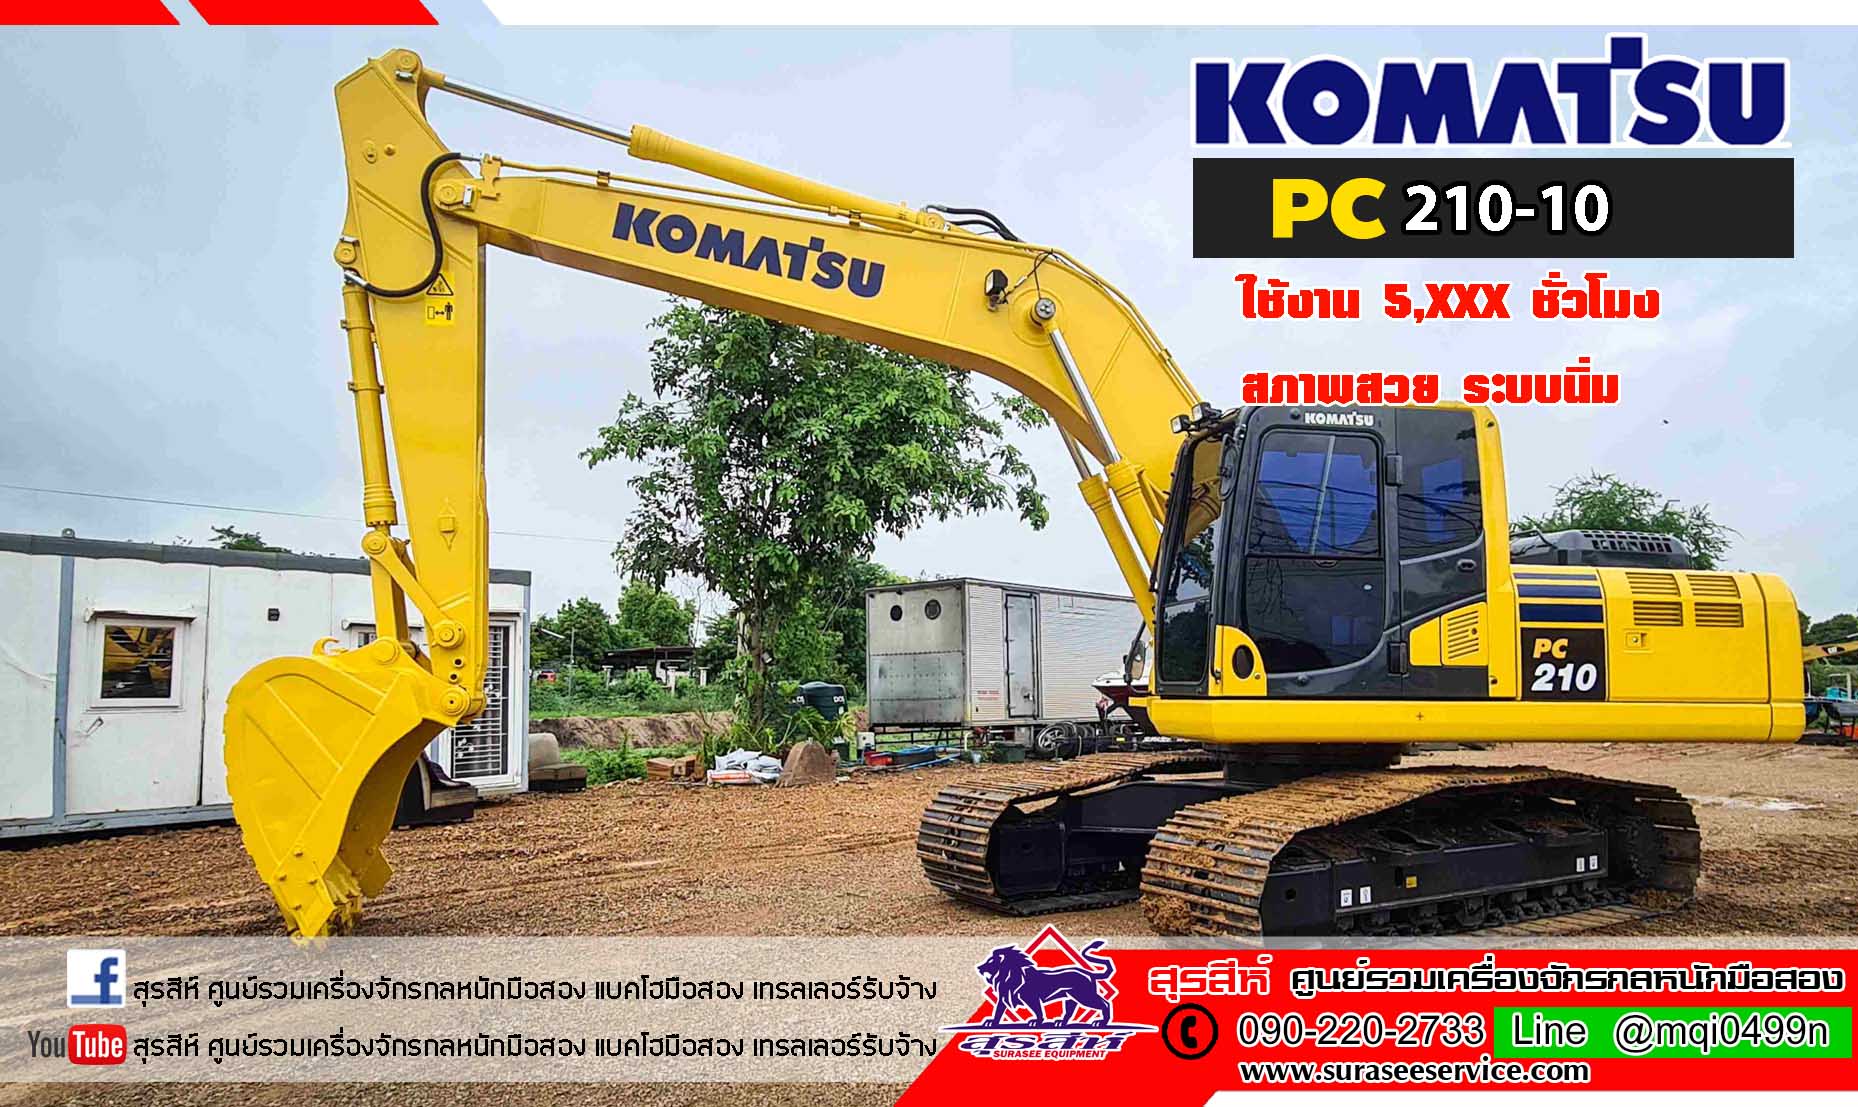 KOMATSU PC210-10 ใช้งานเพียง 5 พันชั่วโมง รถสวย ระบบนิ่ม